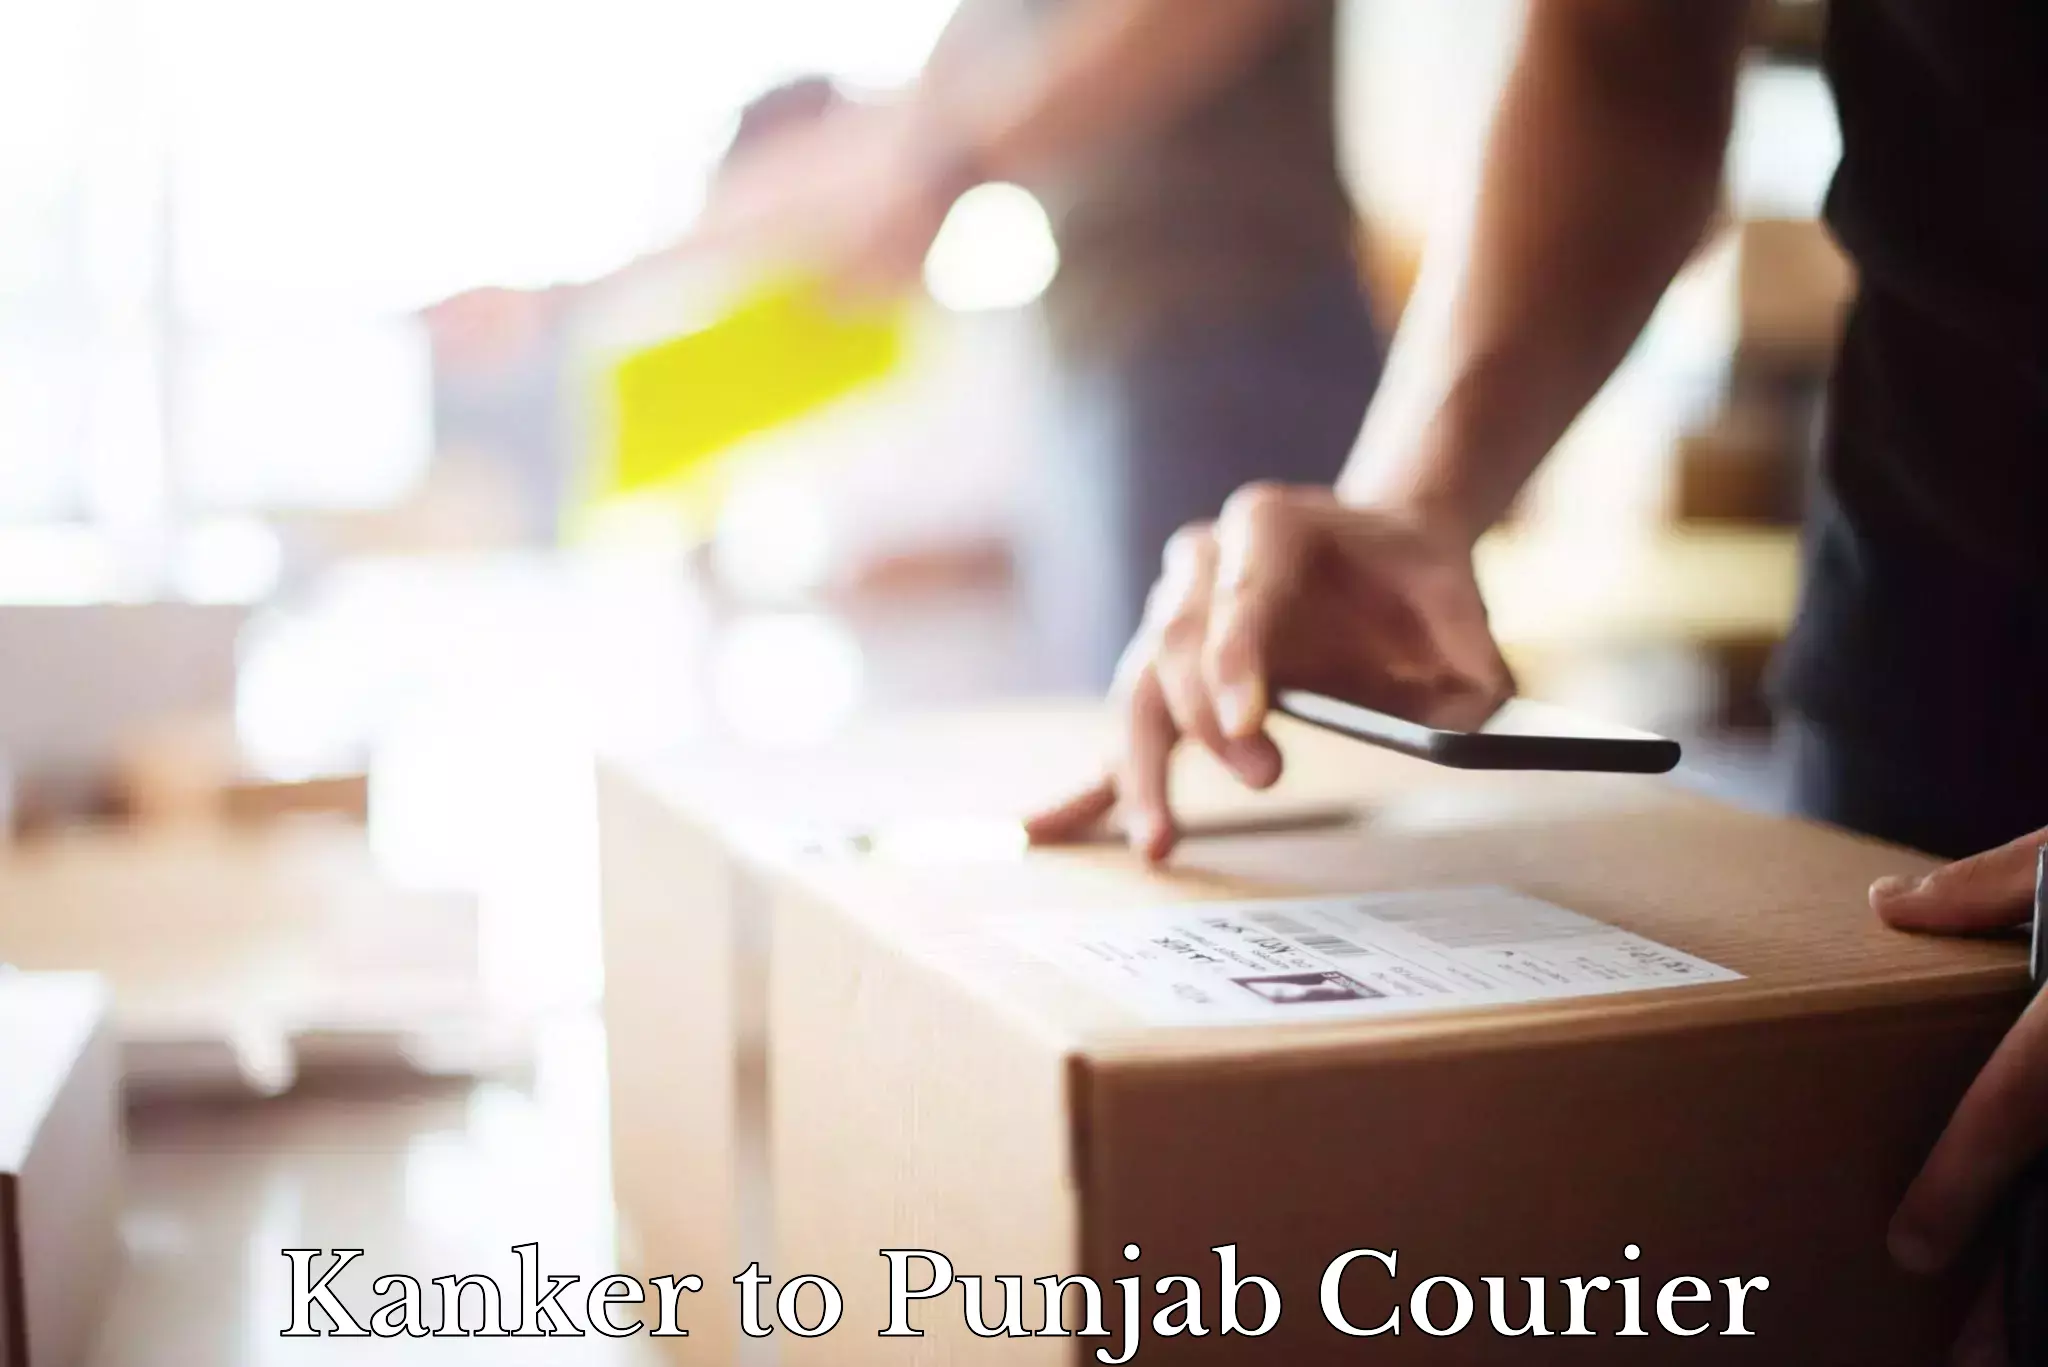 Specialized shipment handling Kanker to Punjab